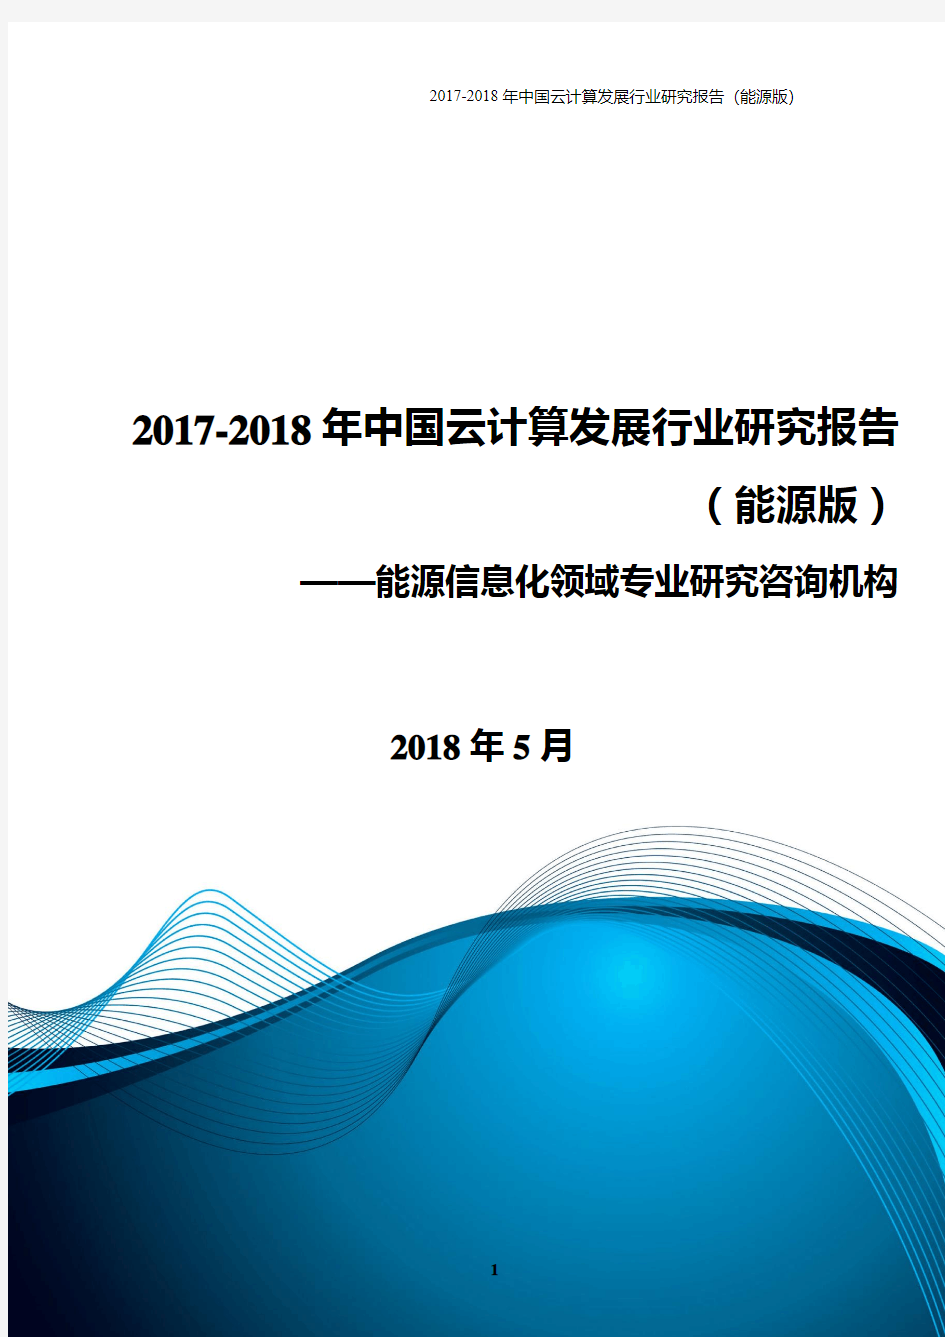 2017-2018年中国云计算发展行业研究报告(能源版)